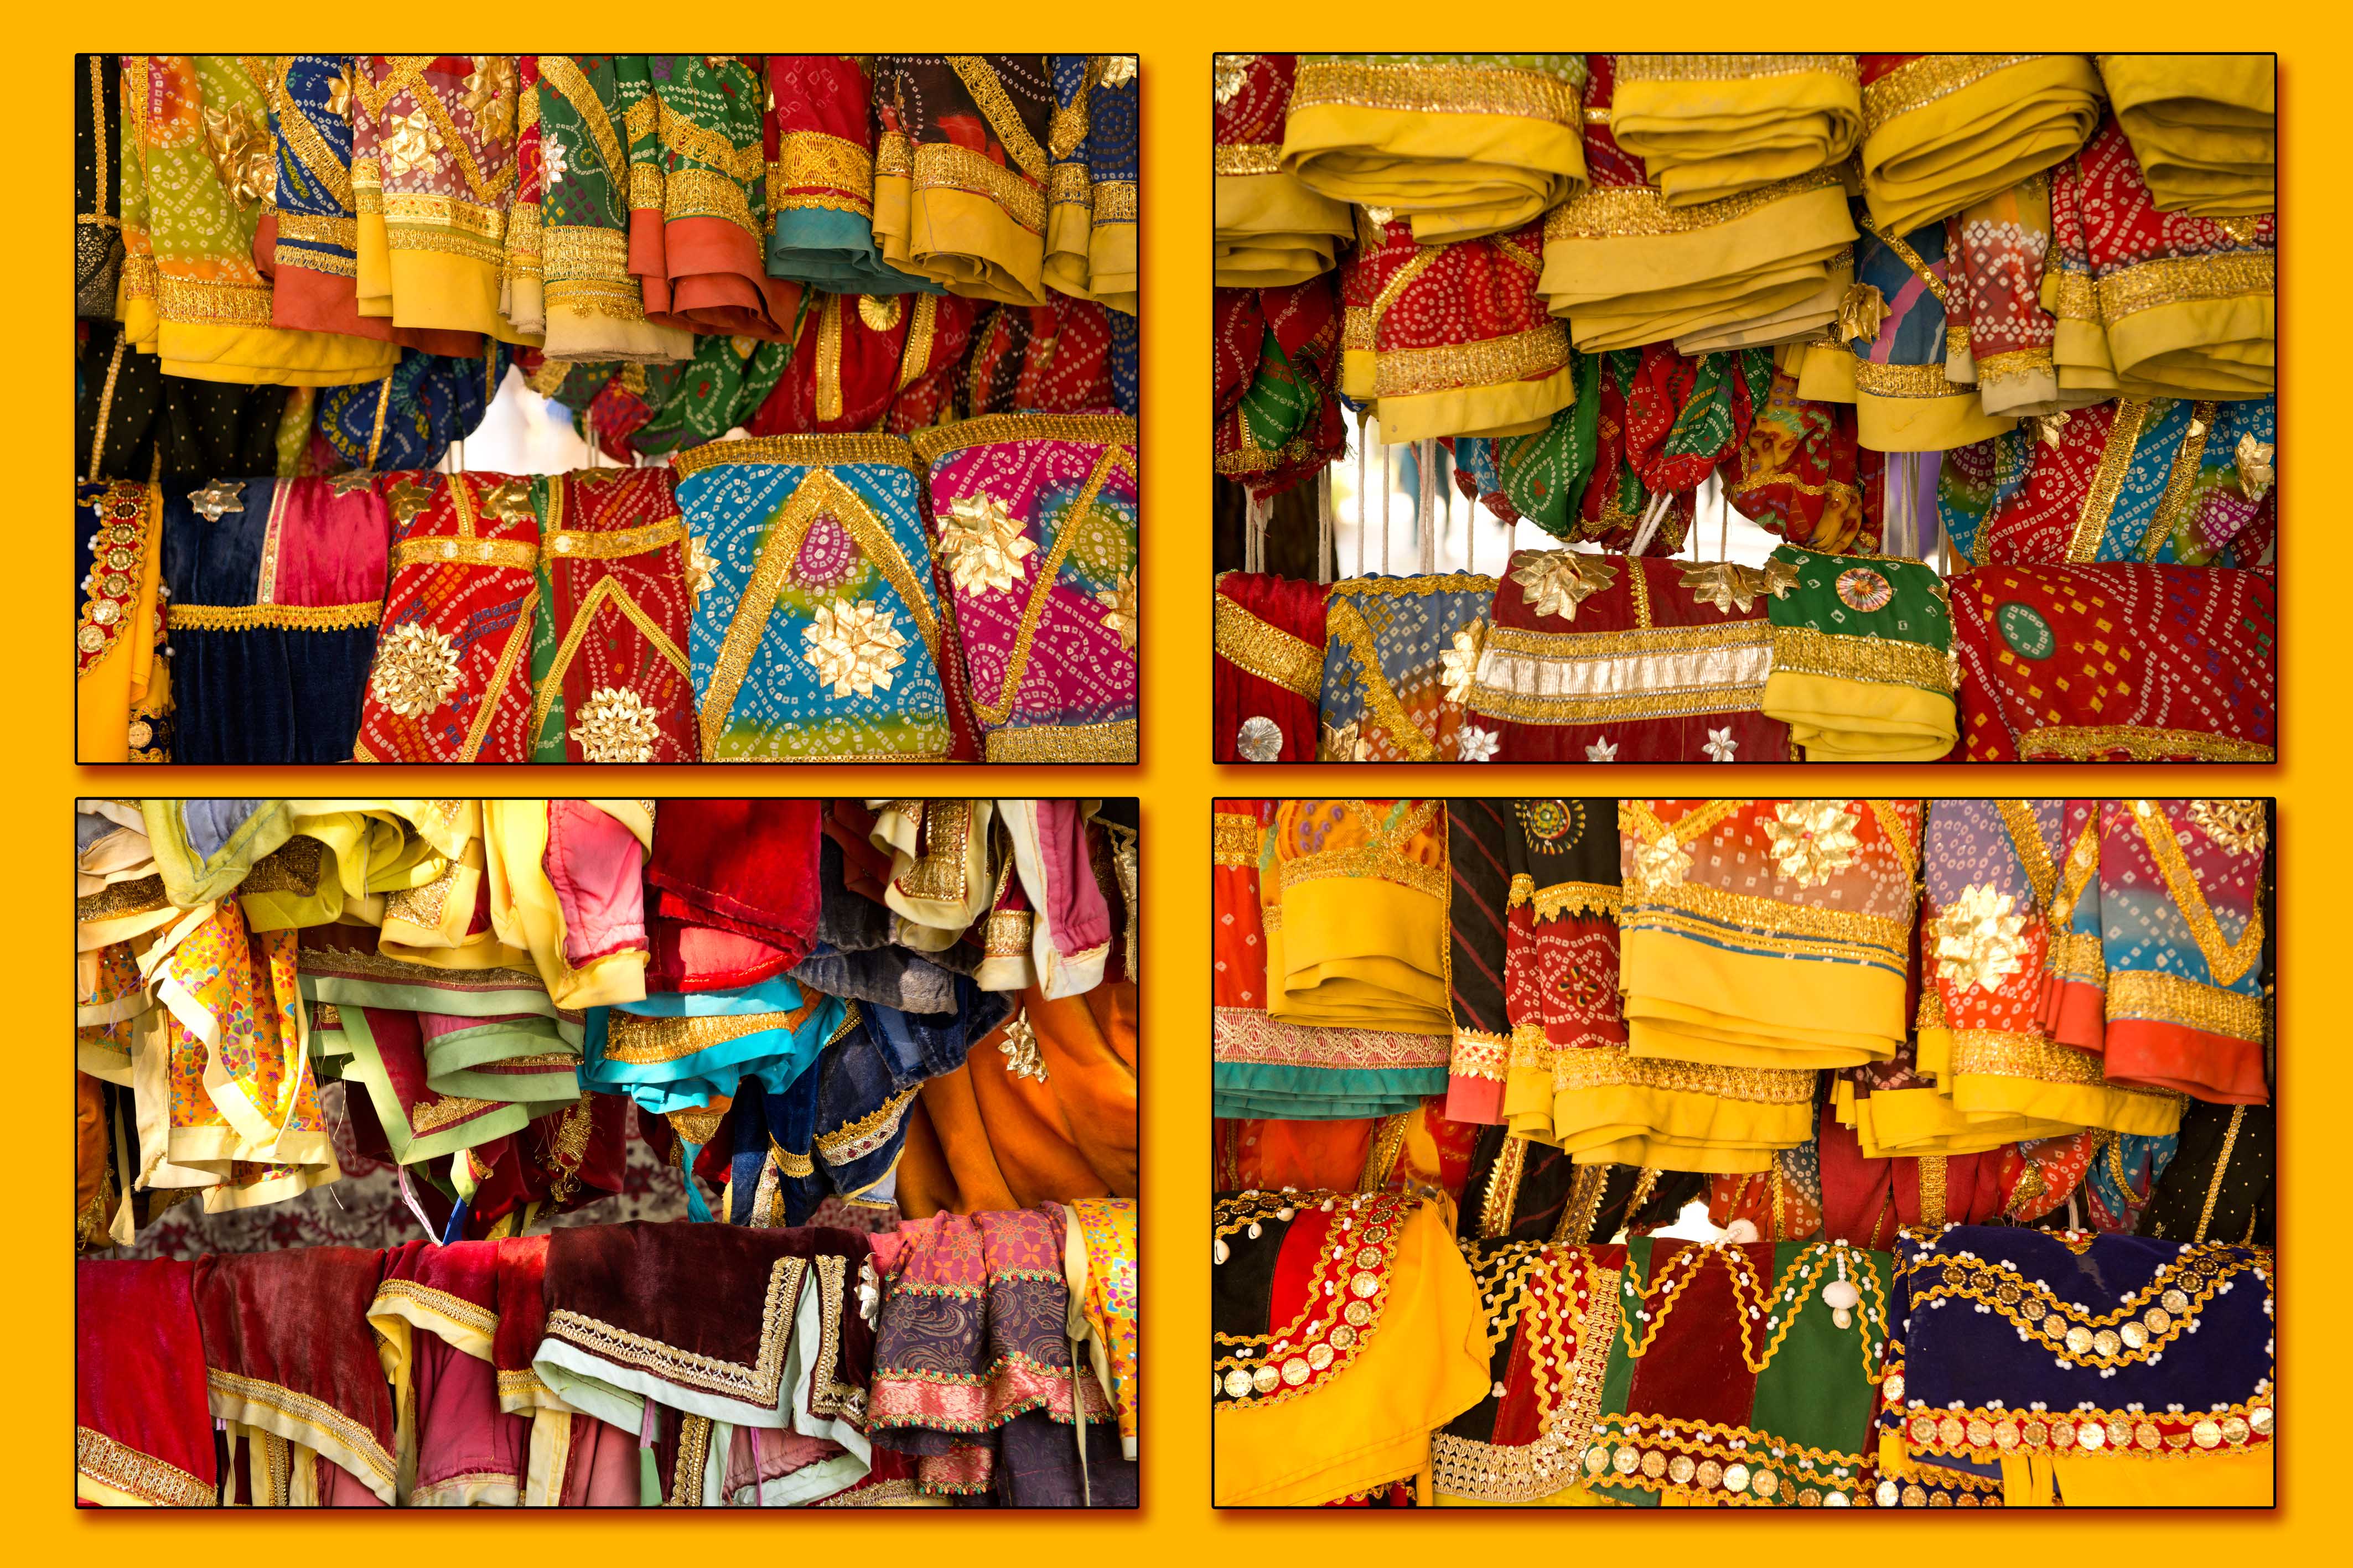 ראגאסטאן נחשבת למחוז הצבעוני ביותר בהודו